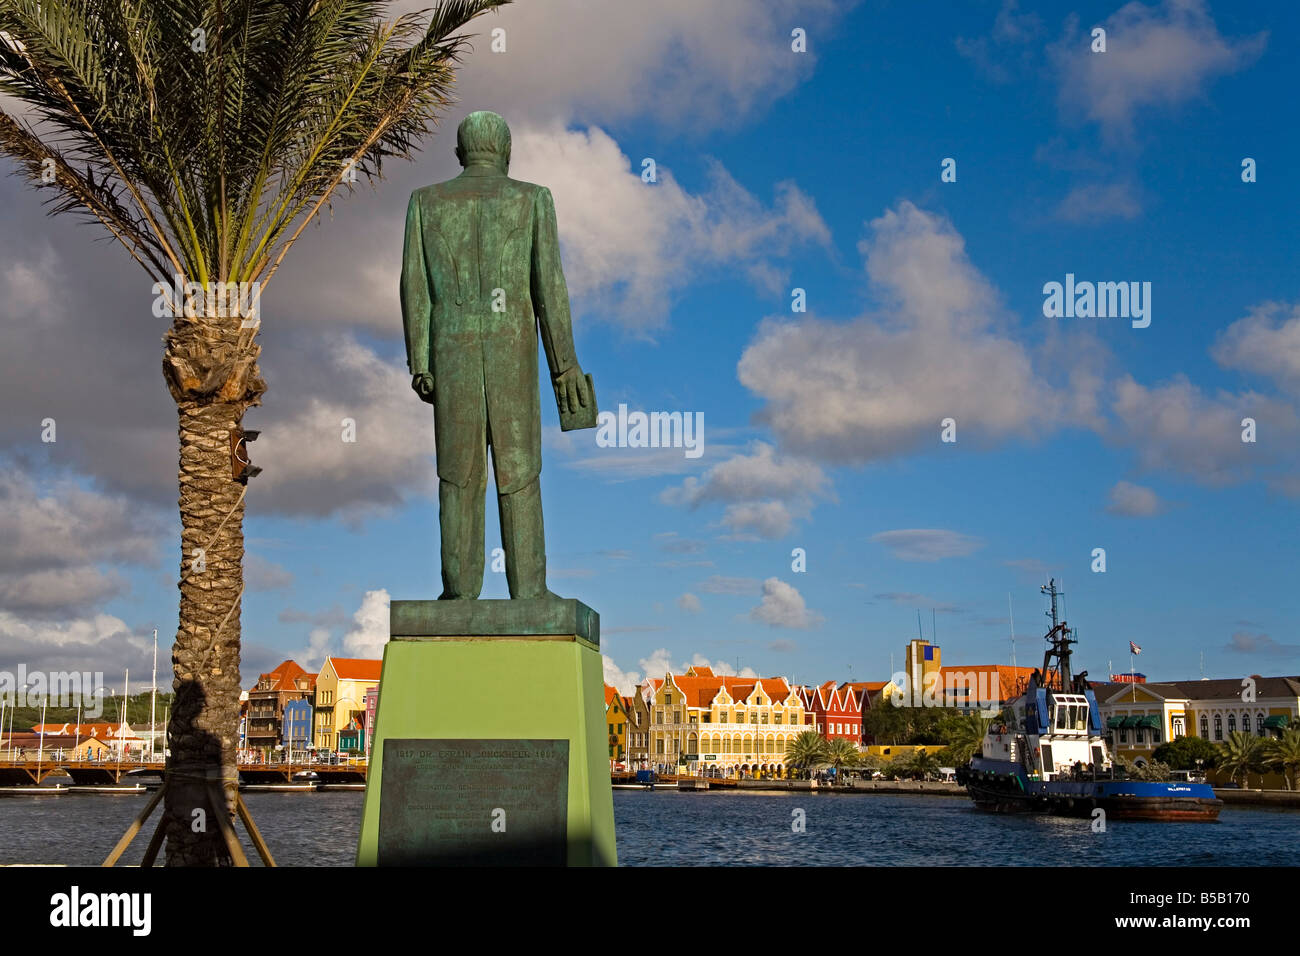 Le Dr Efrain Jonckheer statue, Riffort, Willemstad, Curaçao, Antilles néerlandaises, Antilles, Caraïbes, Amérique Centrale Banque D'Images